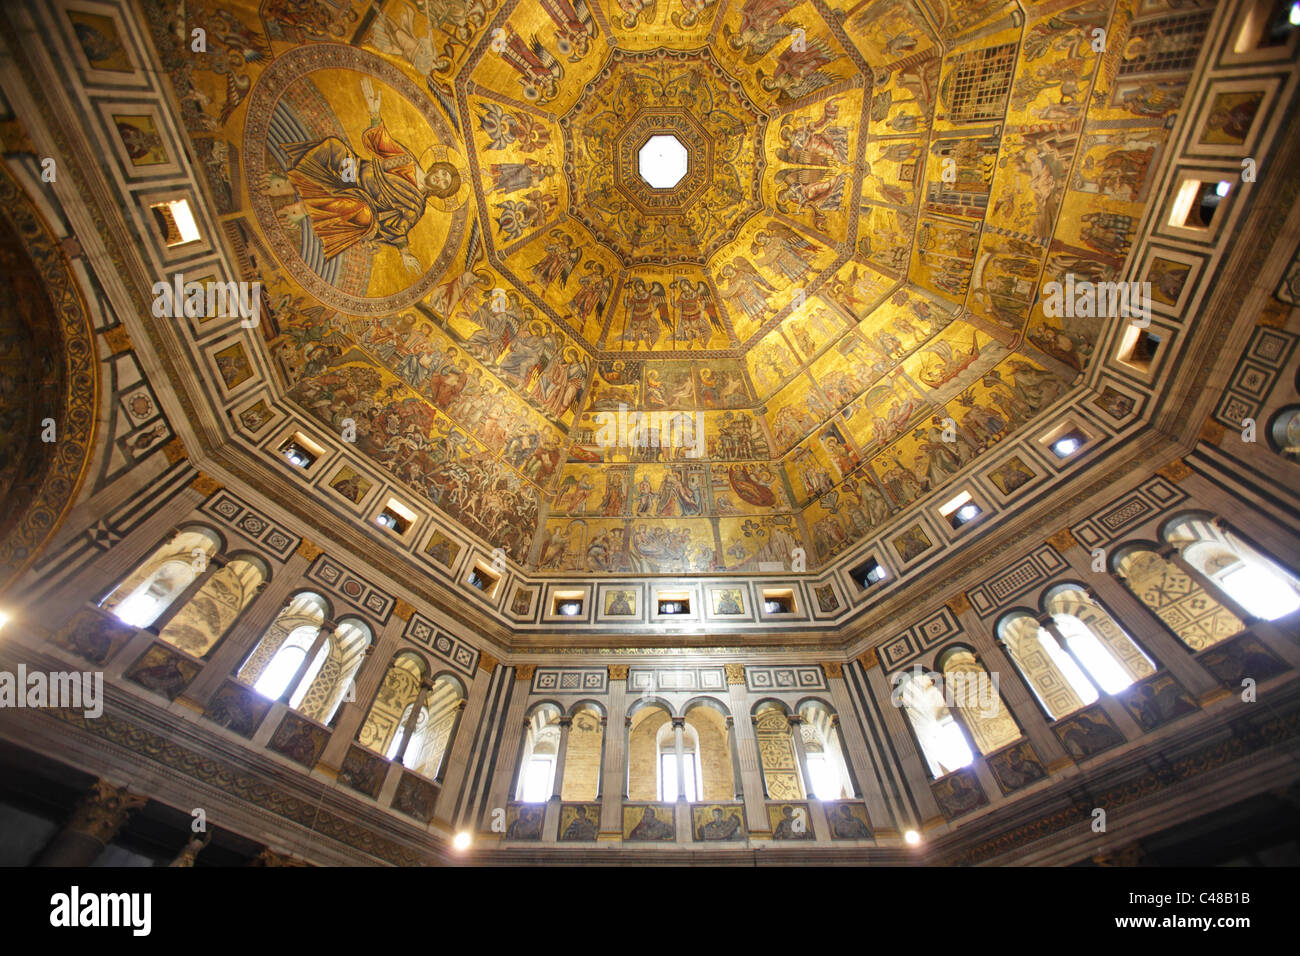 Le plafond en mosaïque dans le Baptistère de Saint-Jean, Florence, Italie Banque D'Images